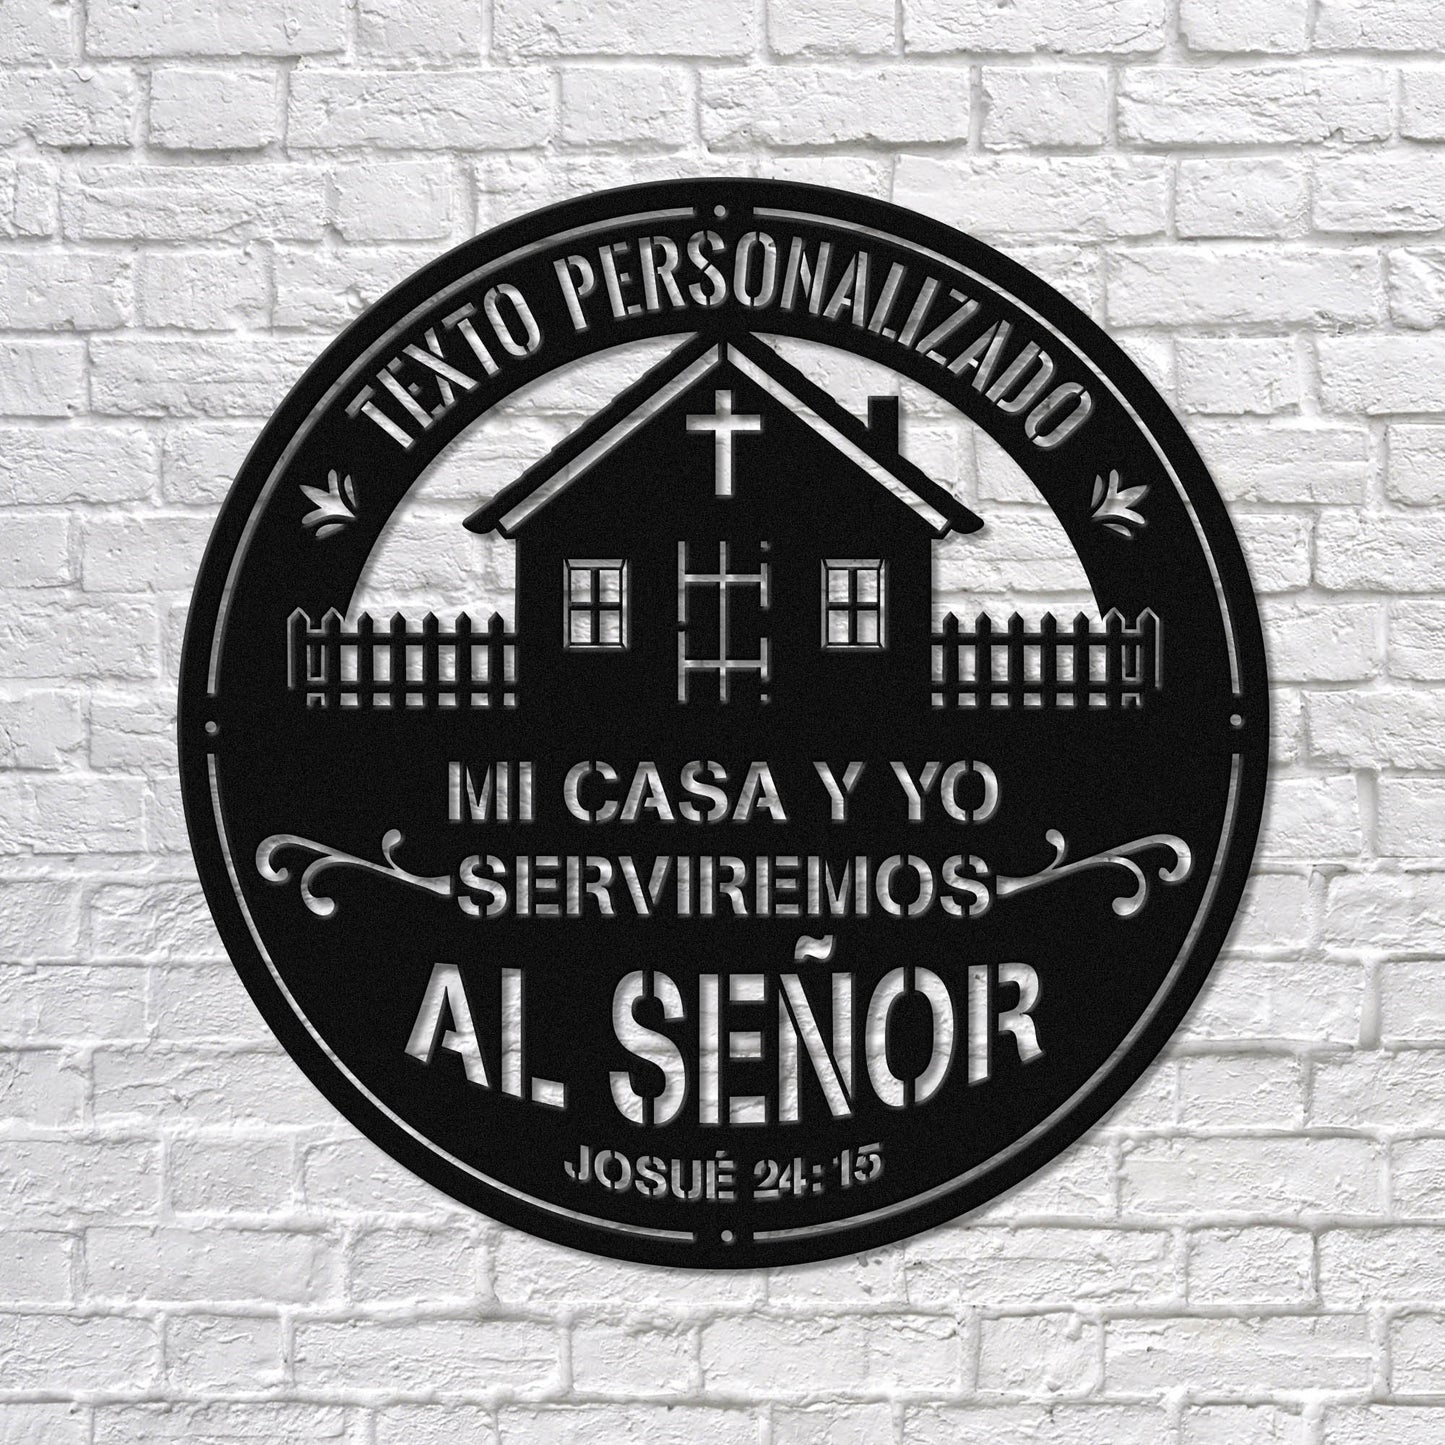 Mi Casa Y Yo Serviremos Al Señor Arte de Metal, As For Me and My House Bible Verse Sign, Spanish/ Español Religious Home Decor, Christian Wall Sign.